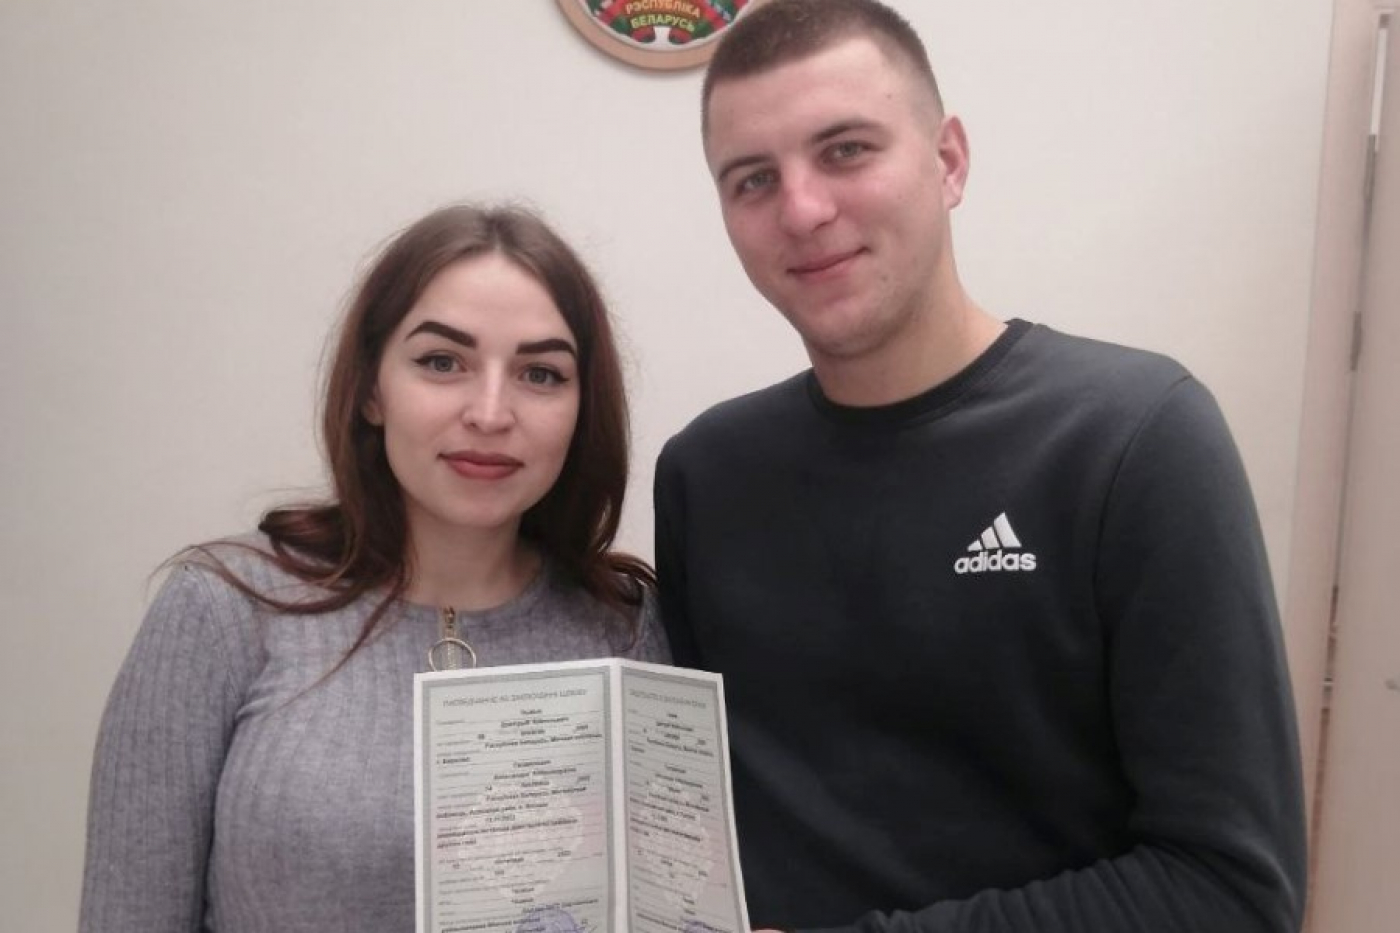 Сегодня зарегистрировали брак Дмитрий и Александра Чижик. Поздравляем!